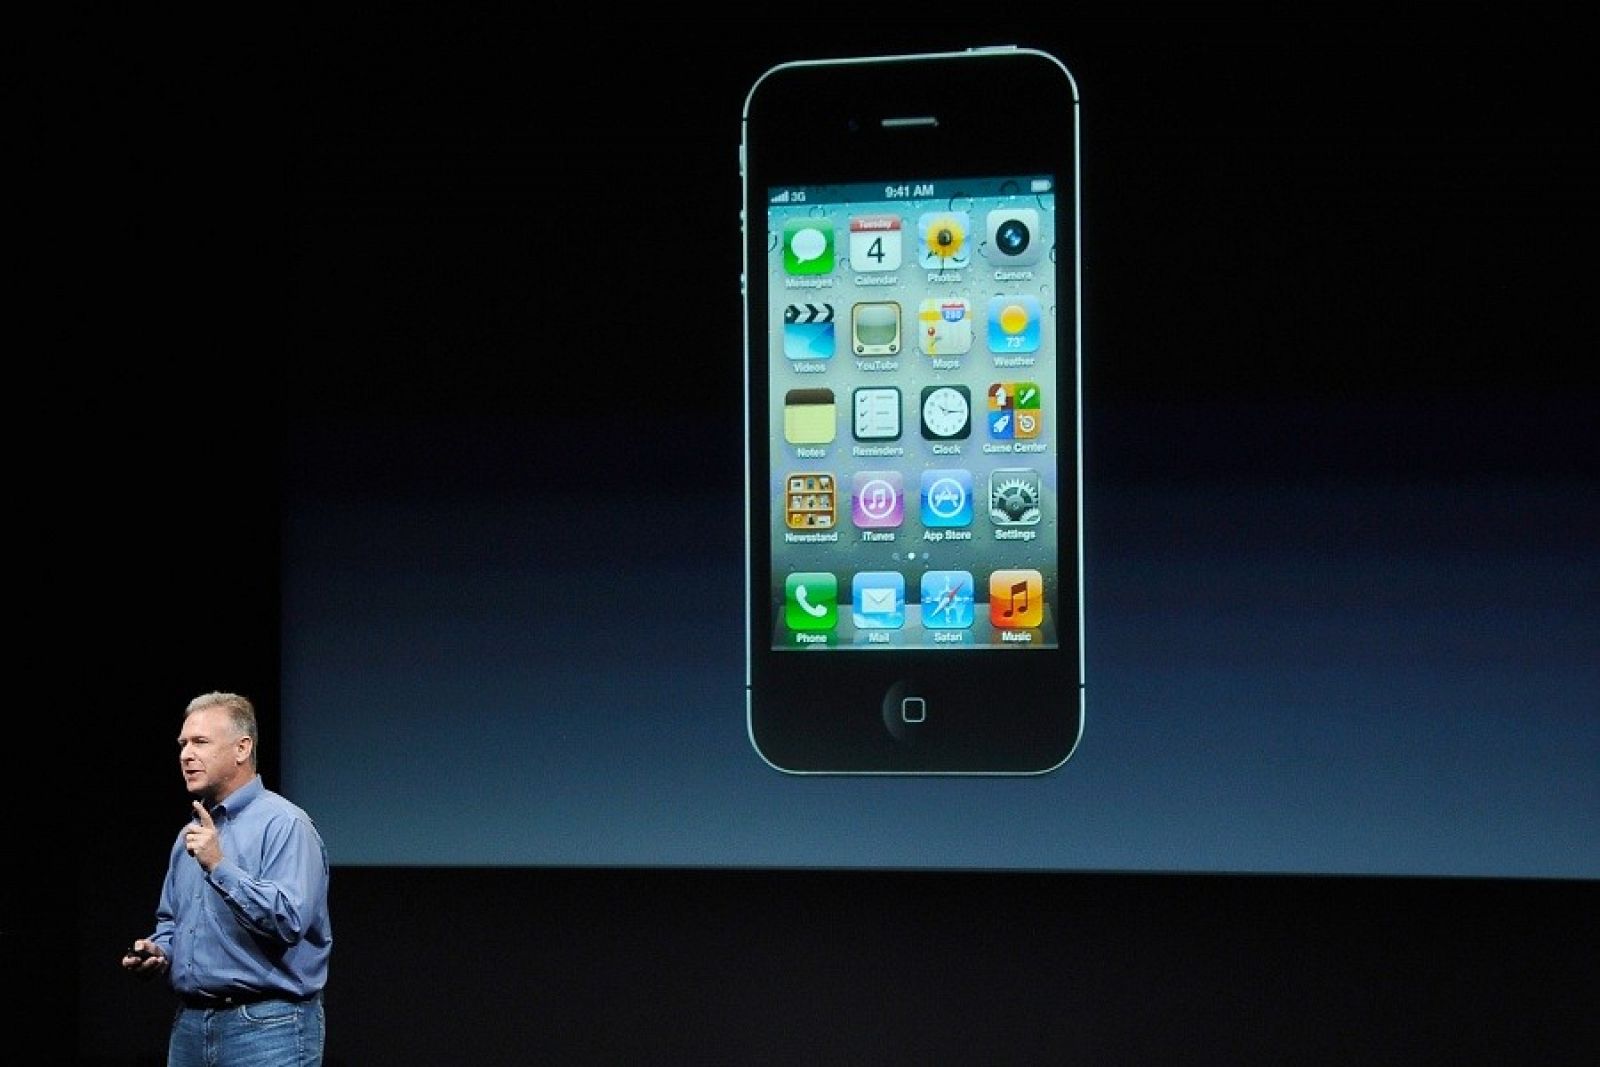 El iPhone 4S, la última versión del popular 'smartphone' de Apple ha sido presentado por Phillip Schiller, uno de los vicepresidentes de la compañía